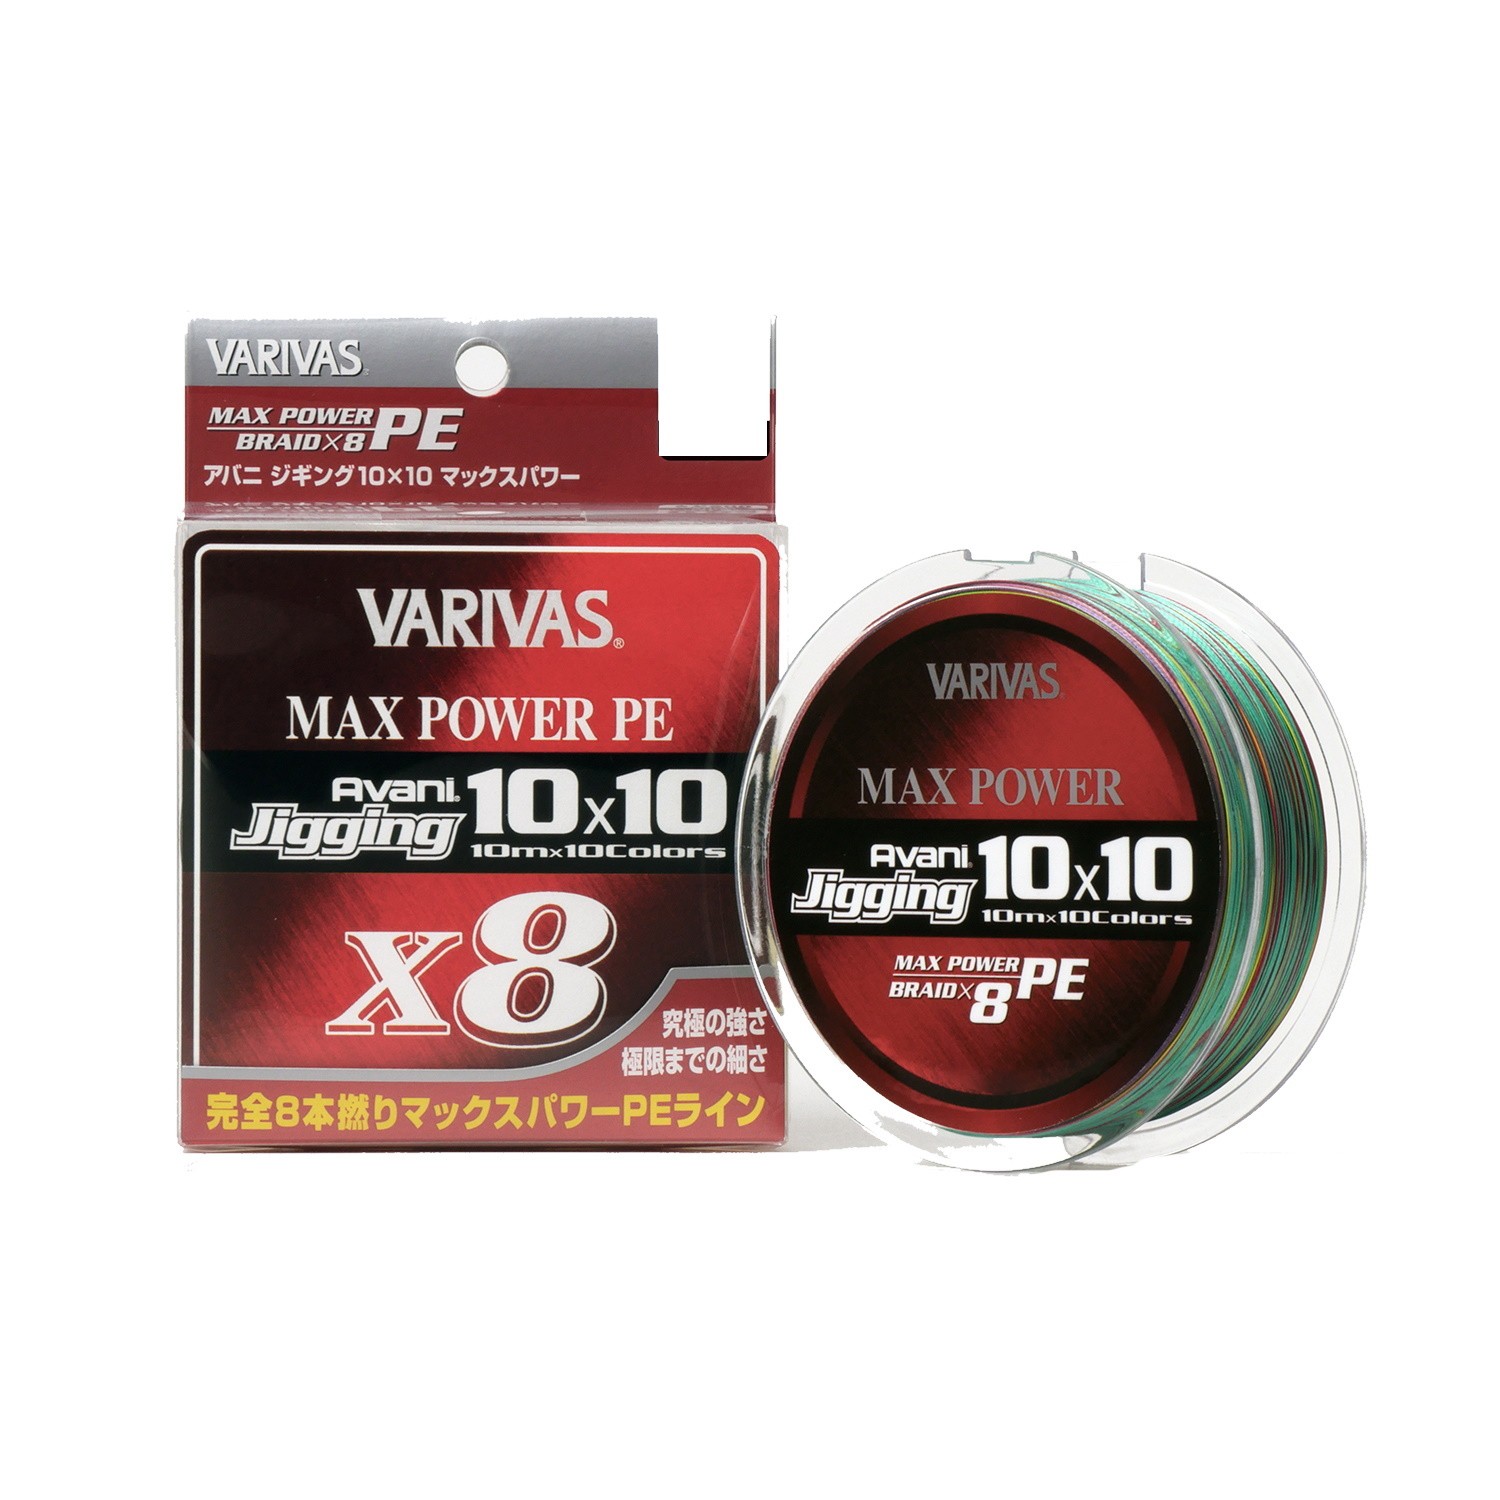 Шнур Varivas Avani Jigging 10x10 Max Power PE X8 200м PE 1.2 - фото 1